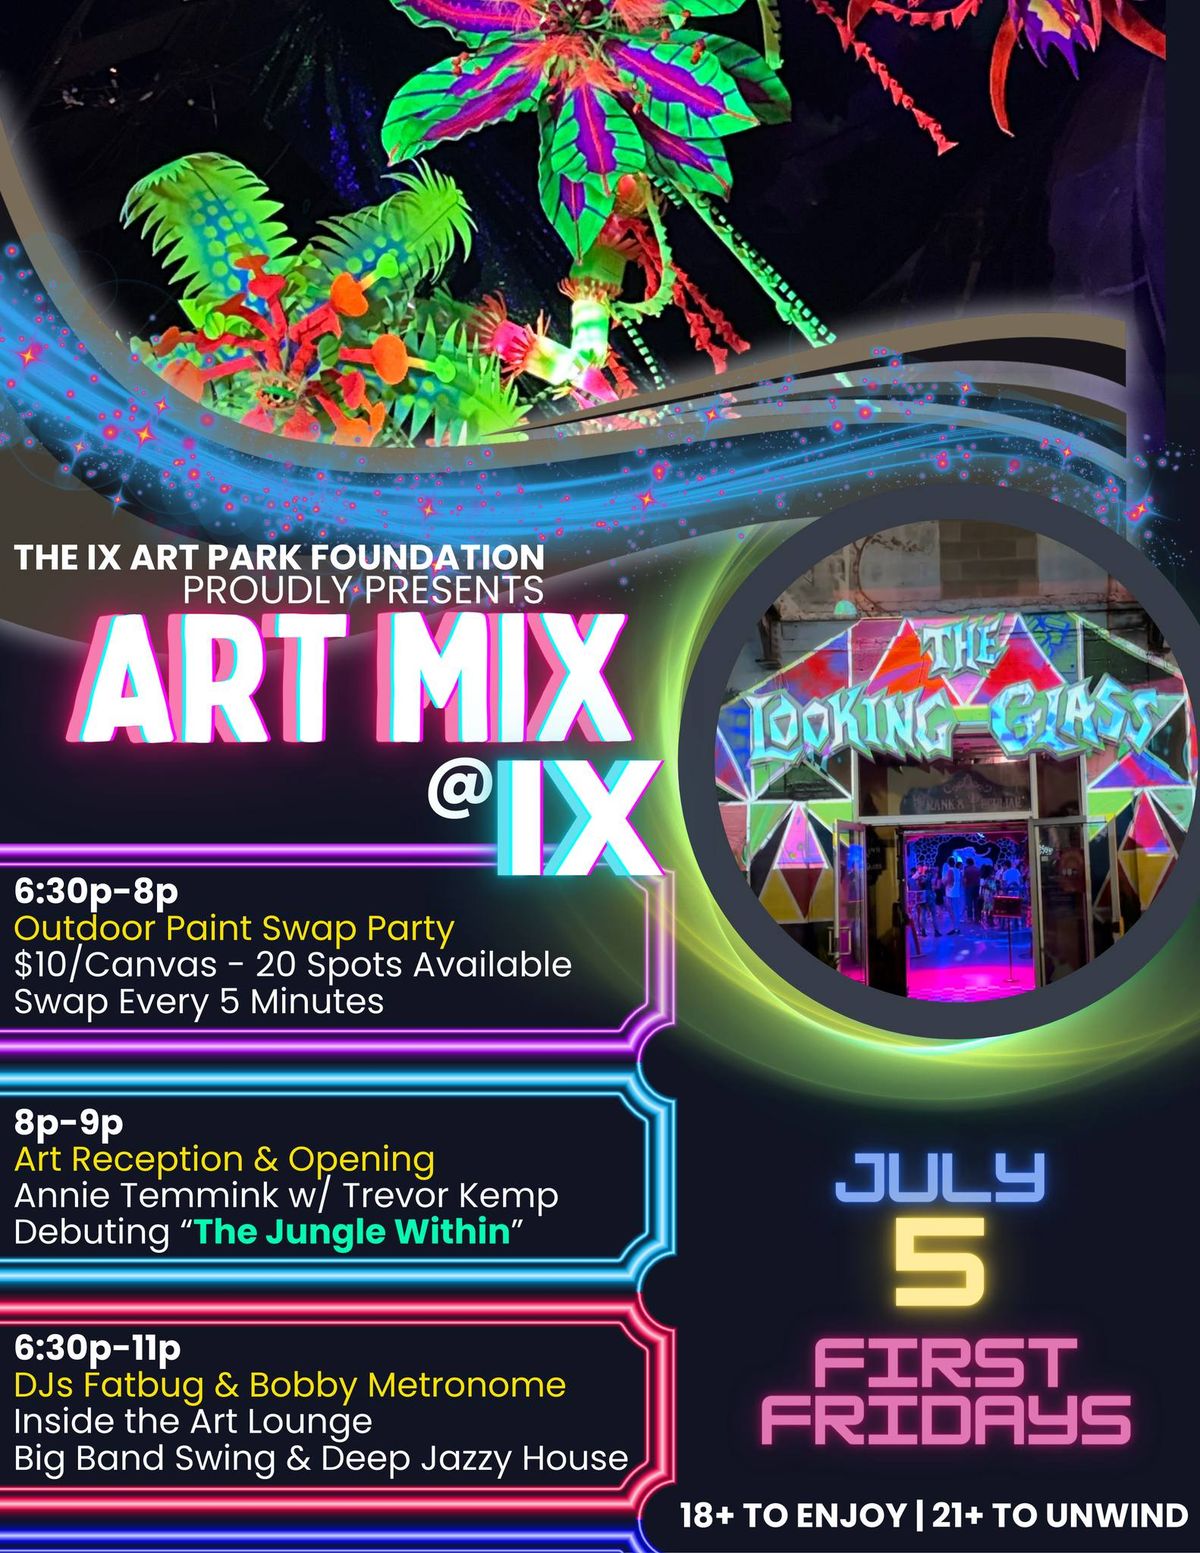 Art Mix at Ix - First Fridays